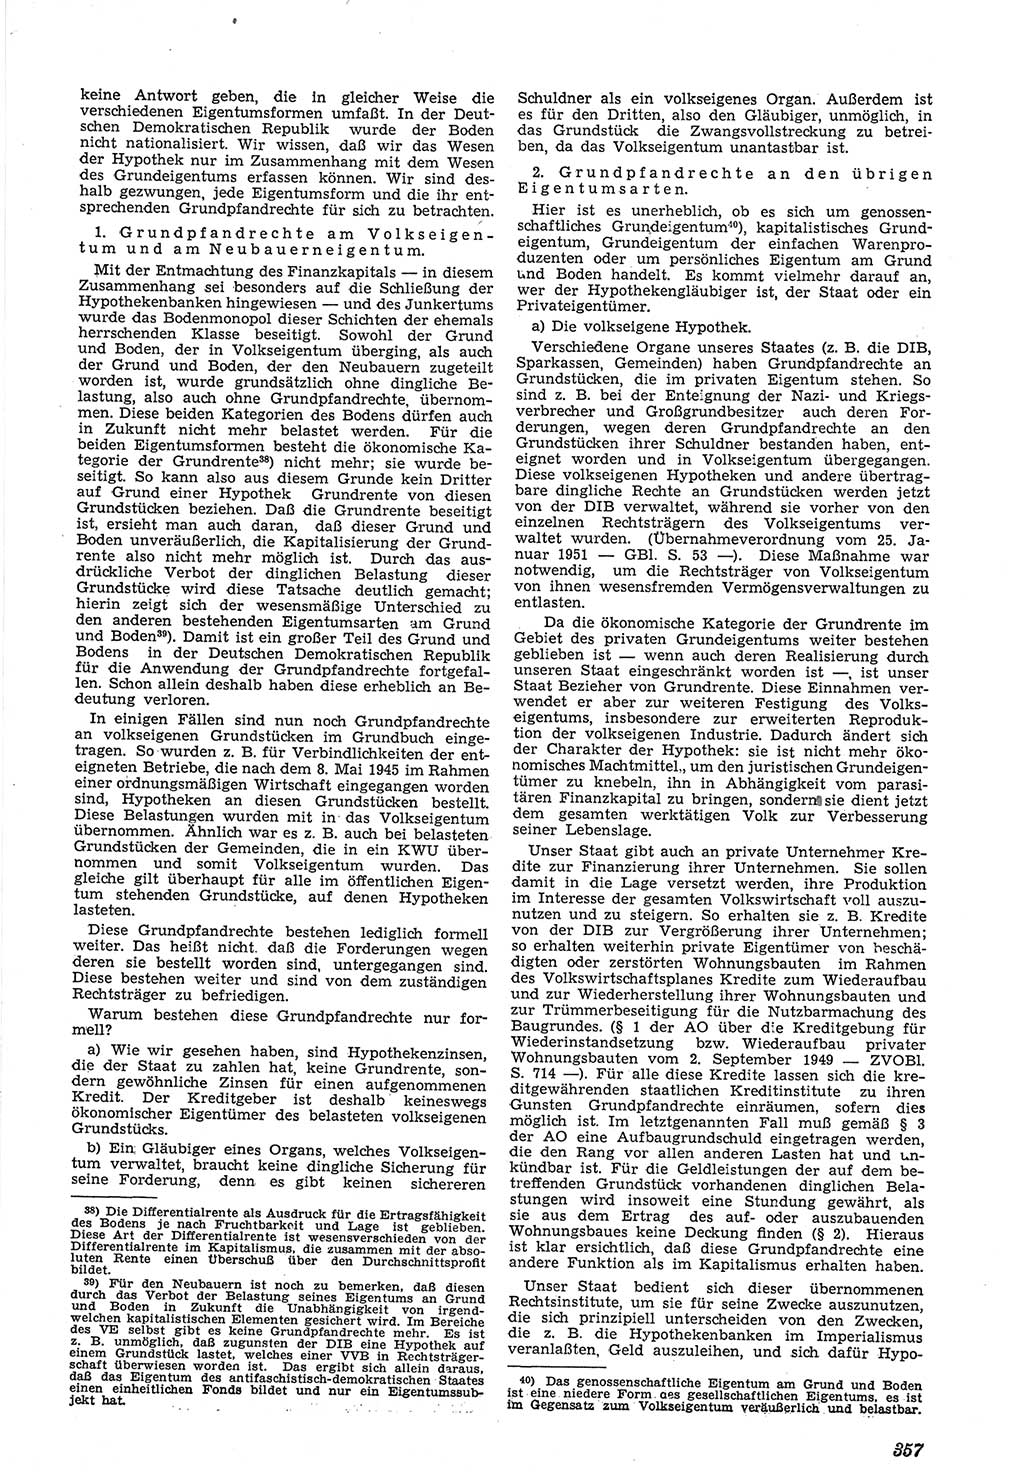 Neue Justiz (NJ), Zeitschrift für Recht und Rechtswissenschaft [Deutsche Demokratische Republik (DDR)], 5. Jahrgang 1951, Seite 357 (NJ DDR 1951, S. 357)